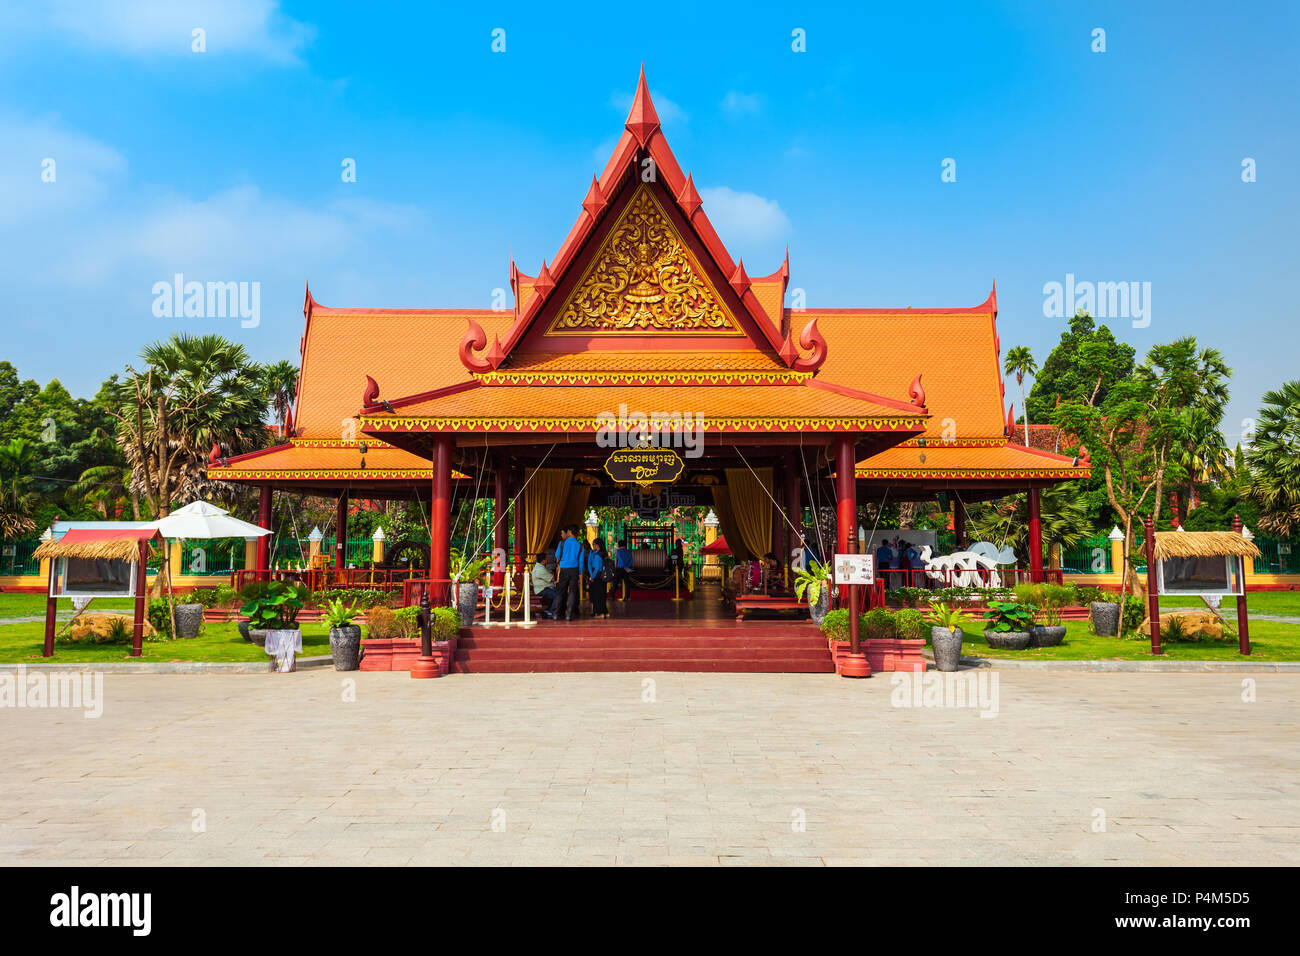 PHNOM PENH, CAMBODIA - MARCH 24, 2018: Krama Hall near the Royal Palace in Phnom Penh in Cambodia Stock Photo